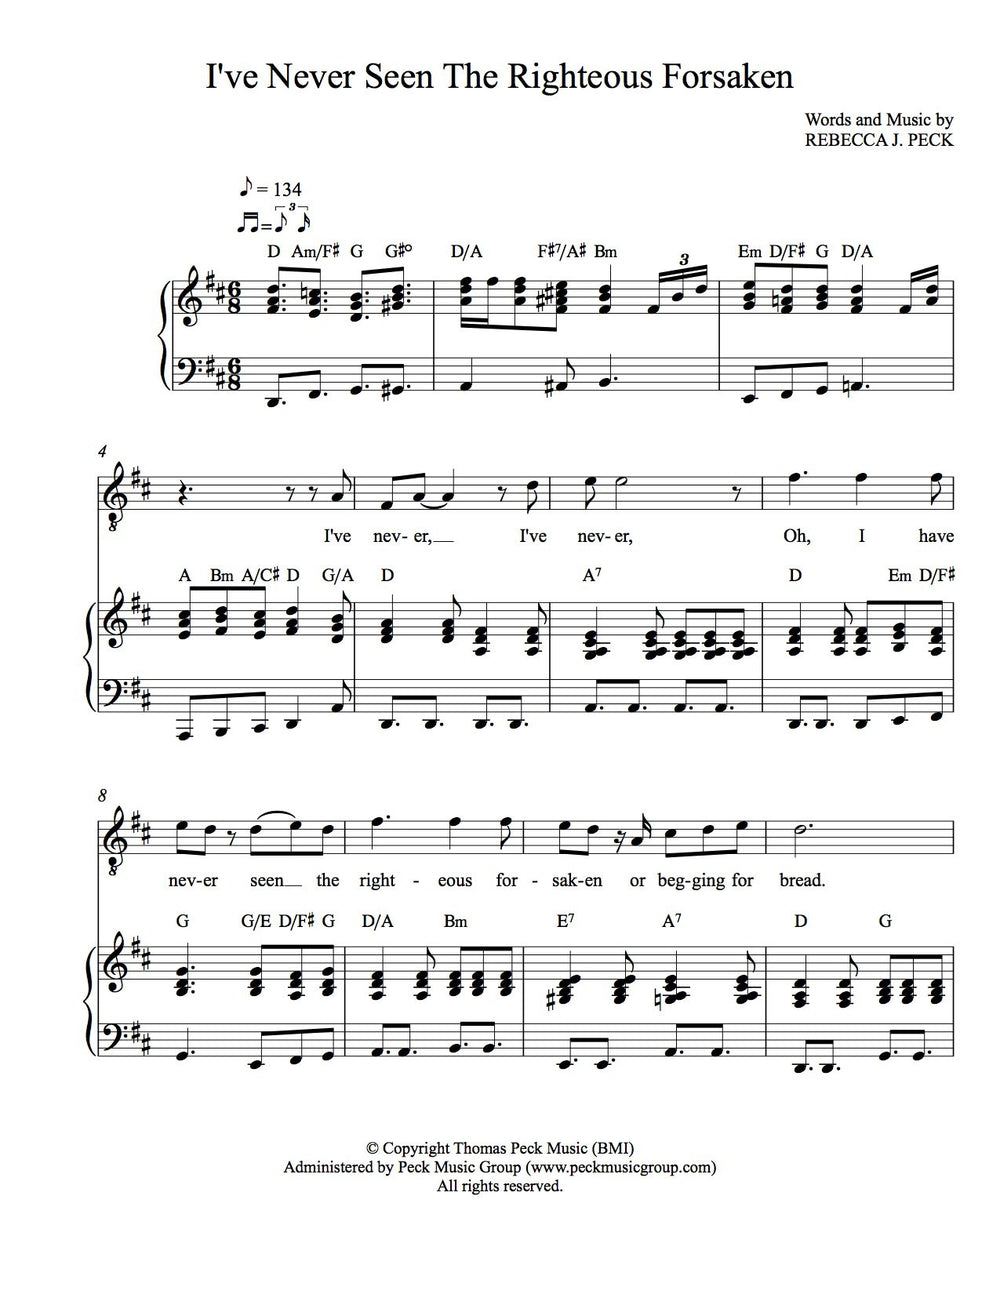 I've Never Seen The Righteous Forsaken - sheet music - Digitally Delivered PDF